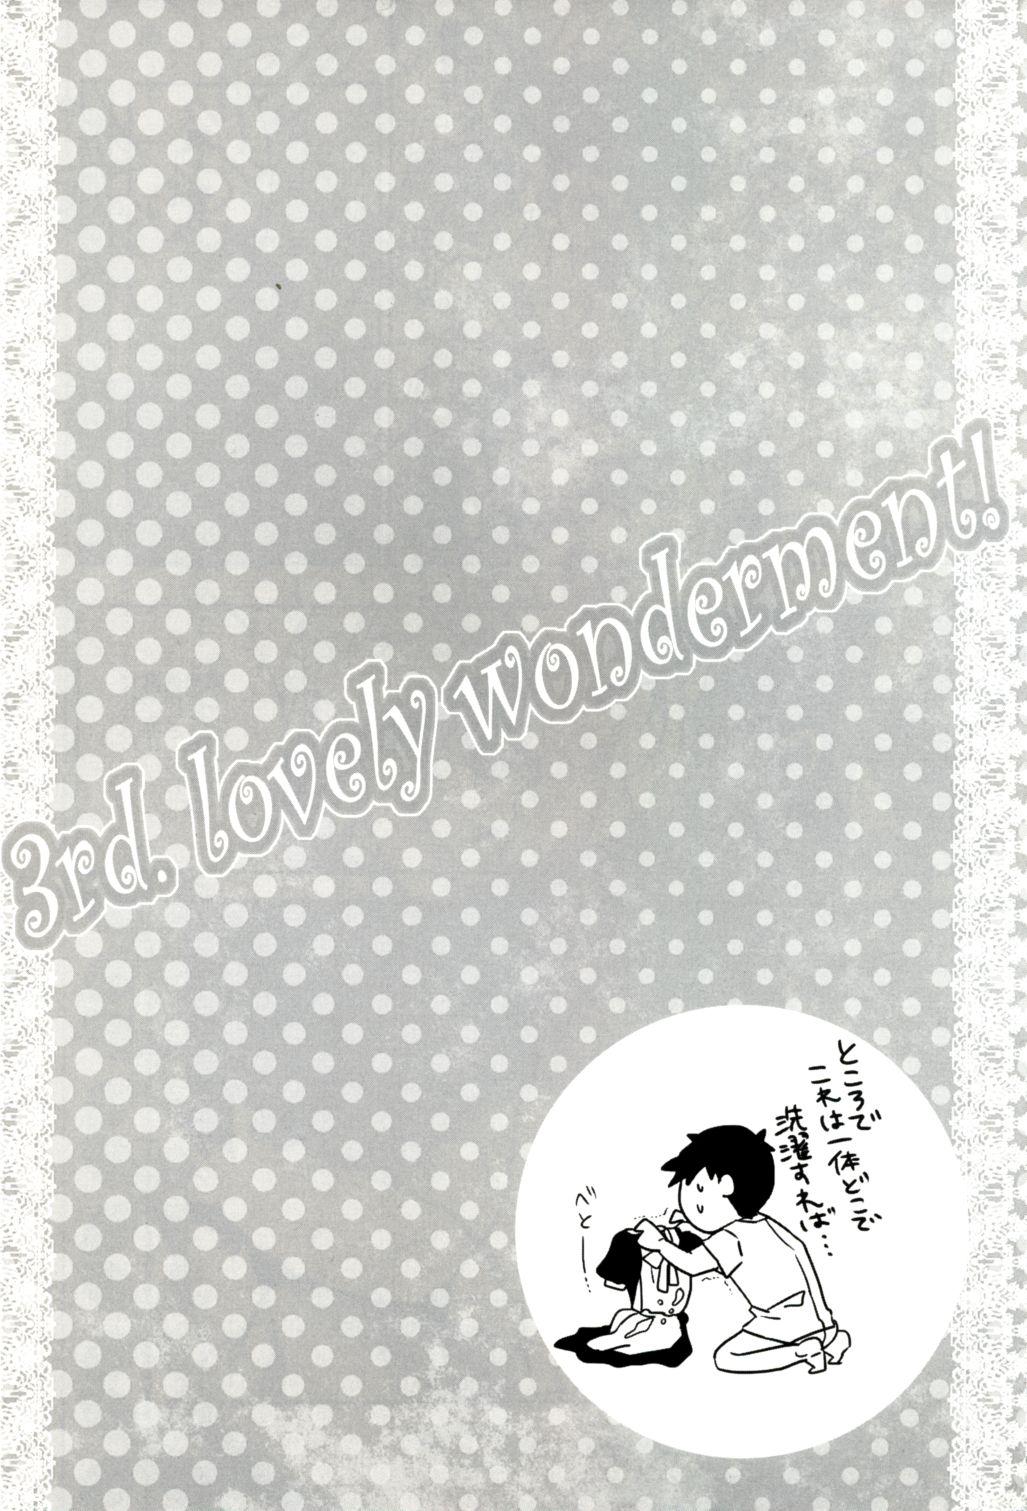 3rd. lovely wonderment! 11